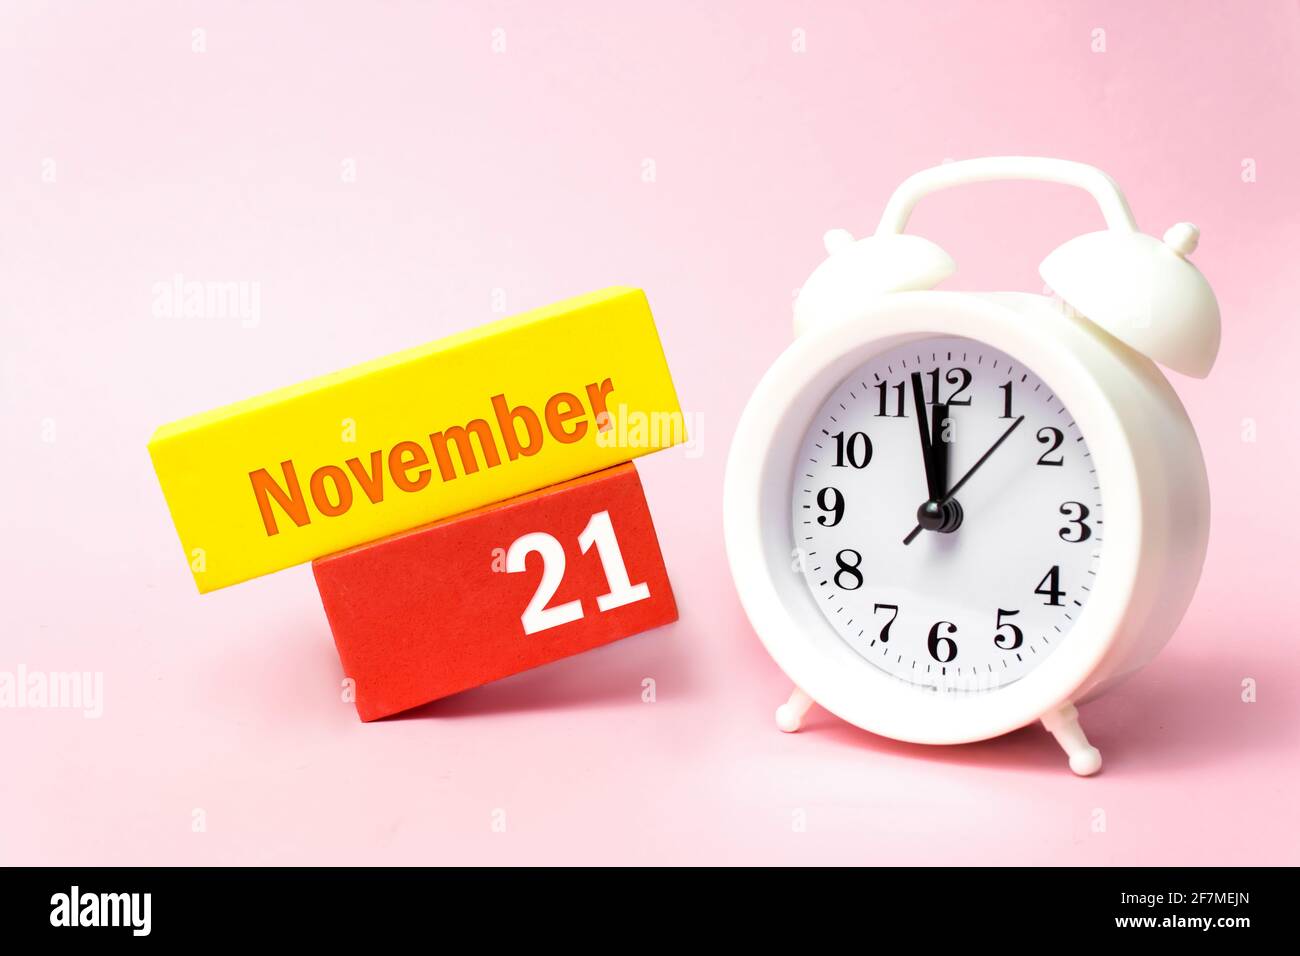 November. Tag 21 des Monats, Kalenderdatum. Weißer Wecker auf pastellrosa Hintergrund. Herbst Monat, Tag des Jahres Konzept Stockfoto